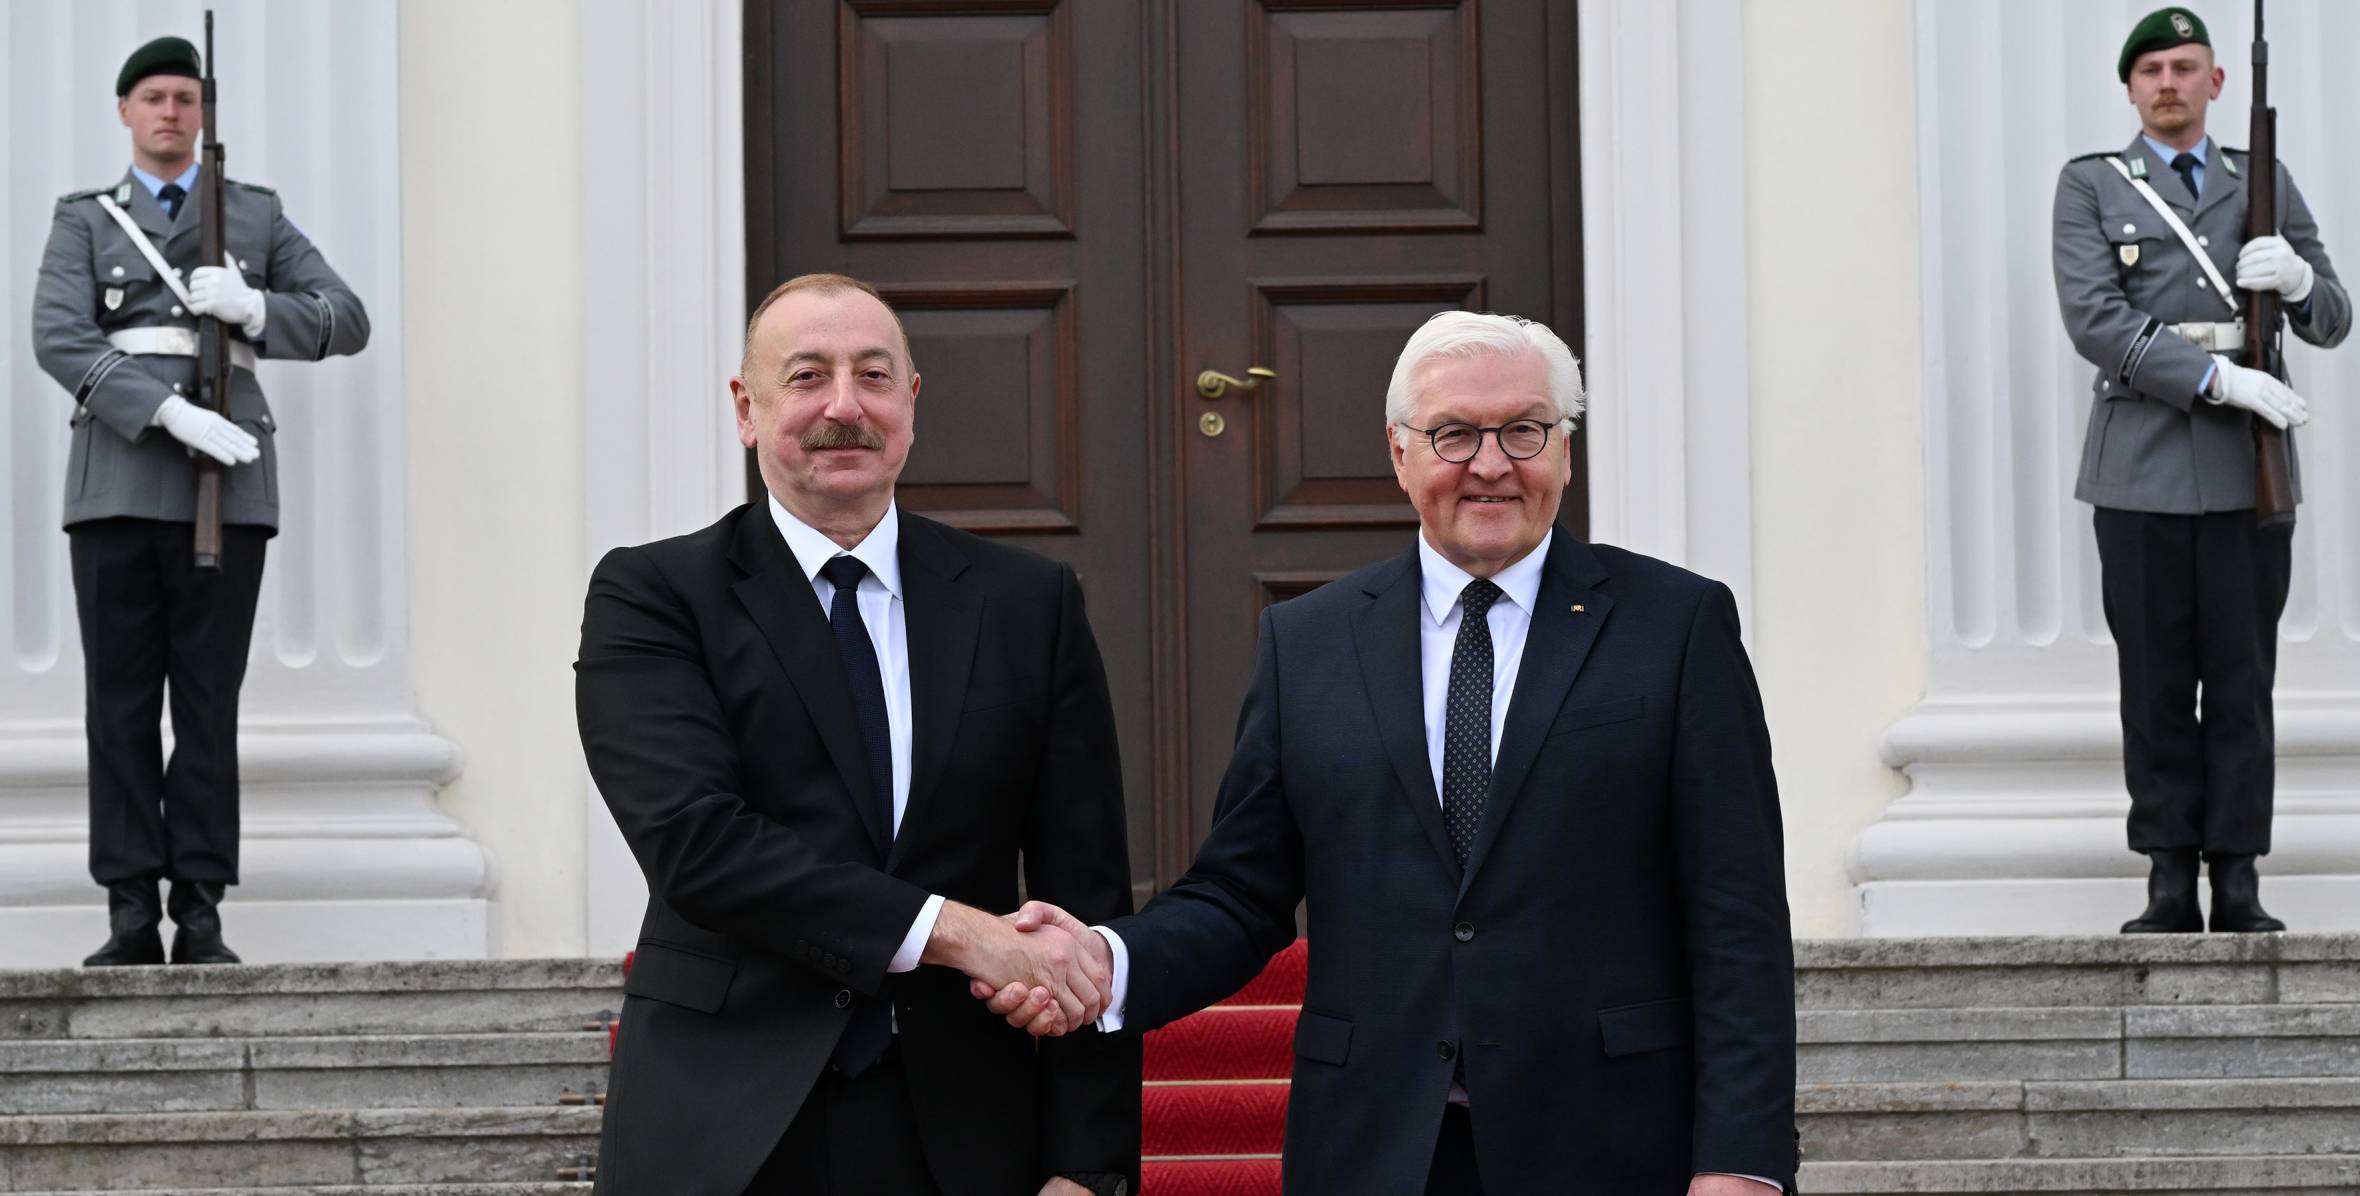 Ilham Aliyev held one-on-one meeting with President of Germany Frank-Walter Steinmeier